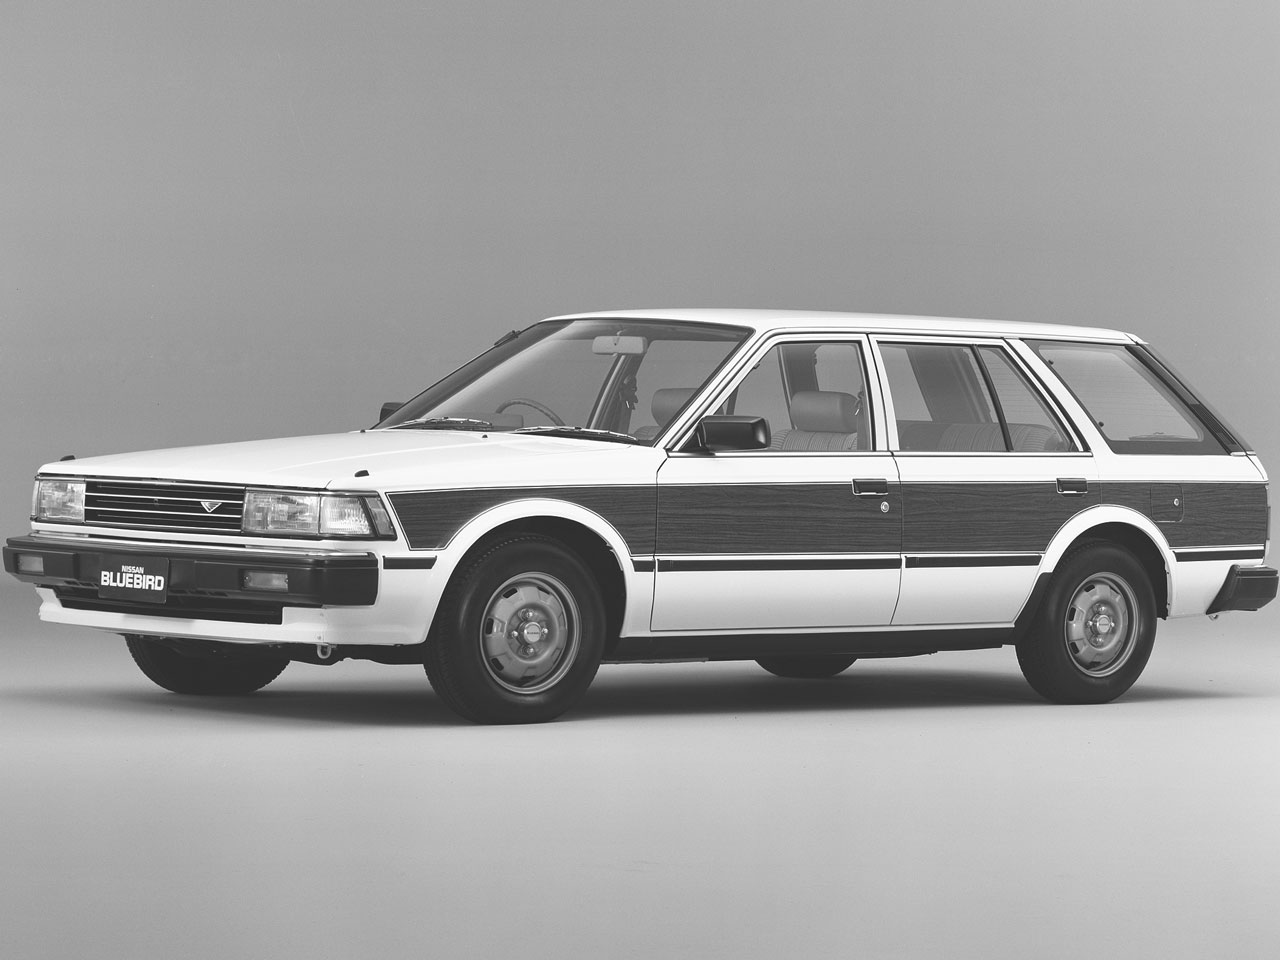 日産 ブルーバード ワゴン 1983年モデル 新車画像